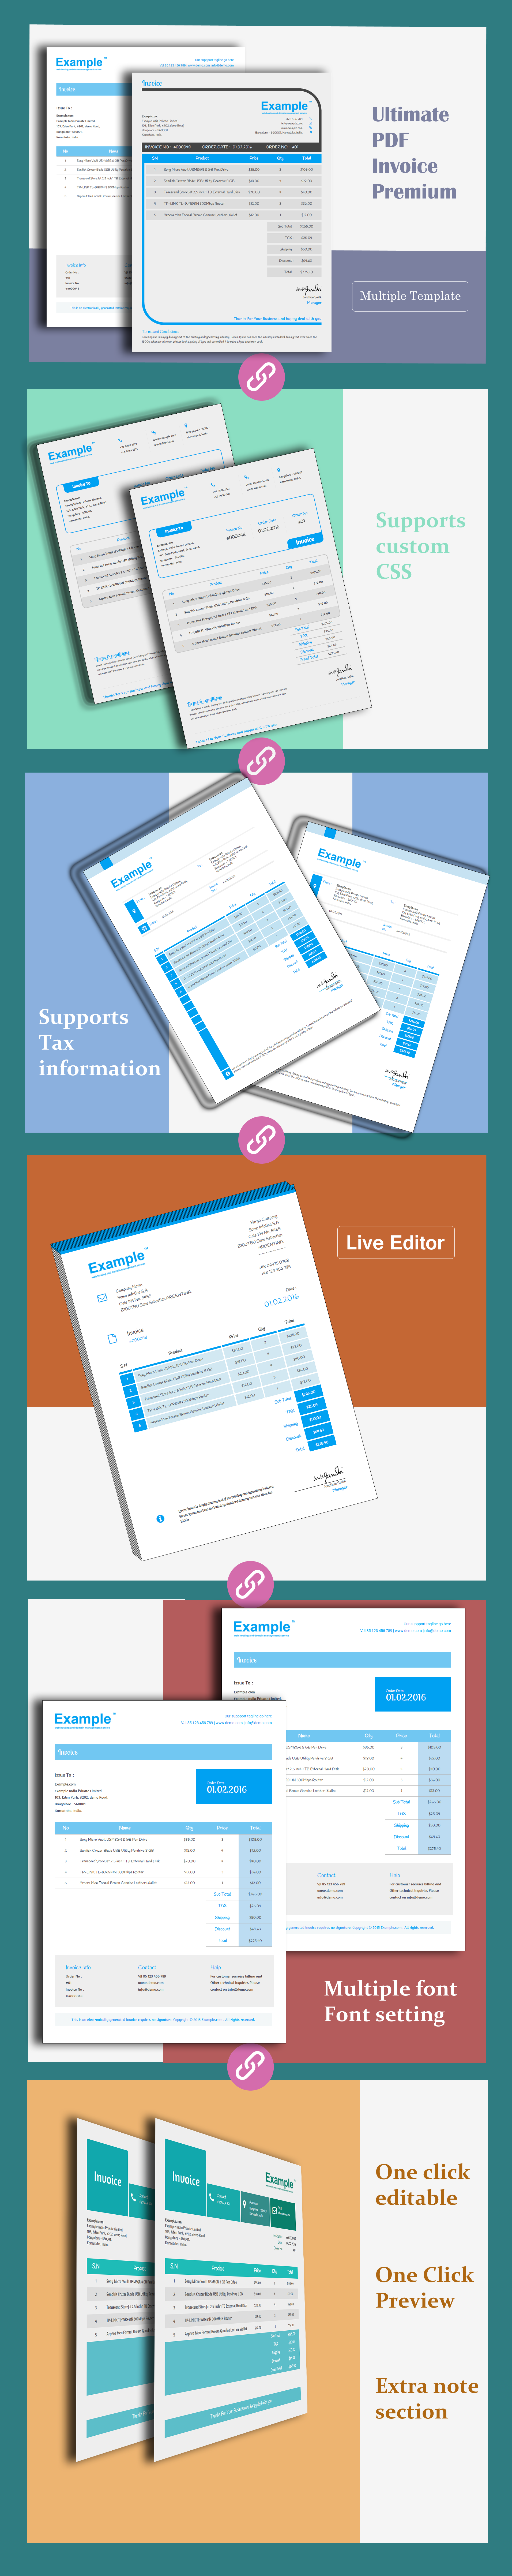 Ultimate PDF Invoice Premium